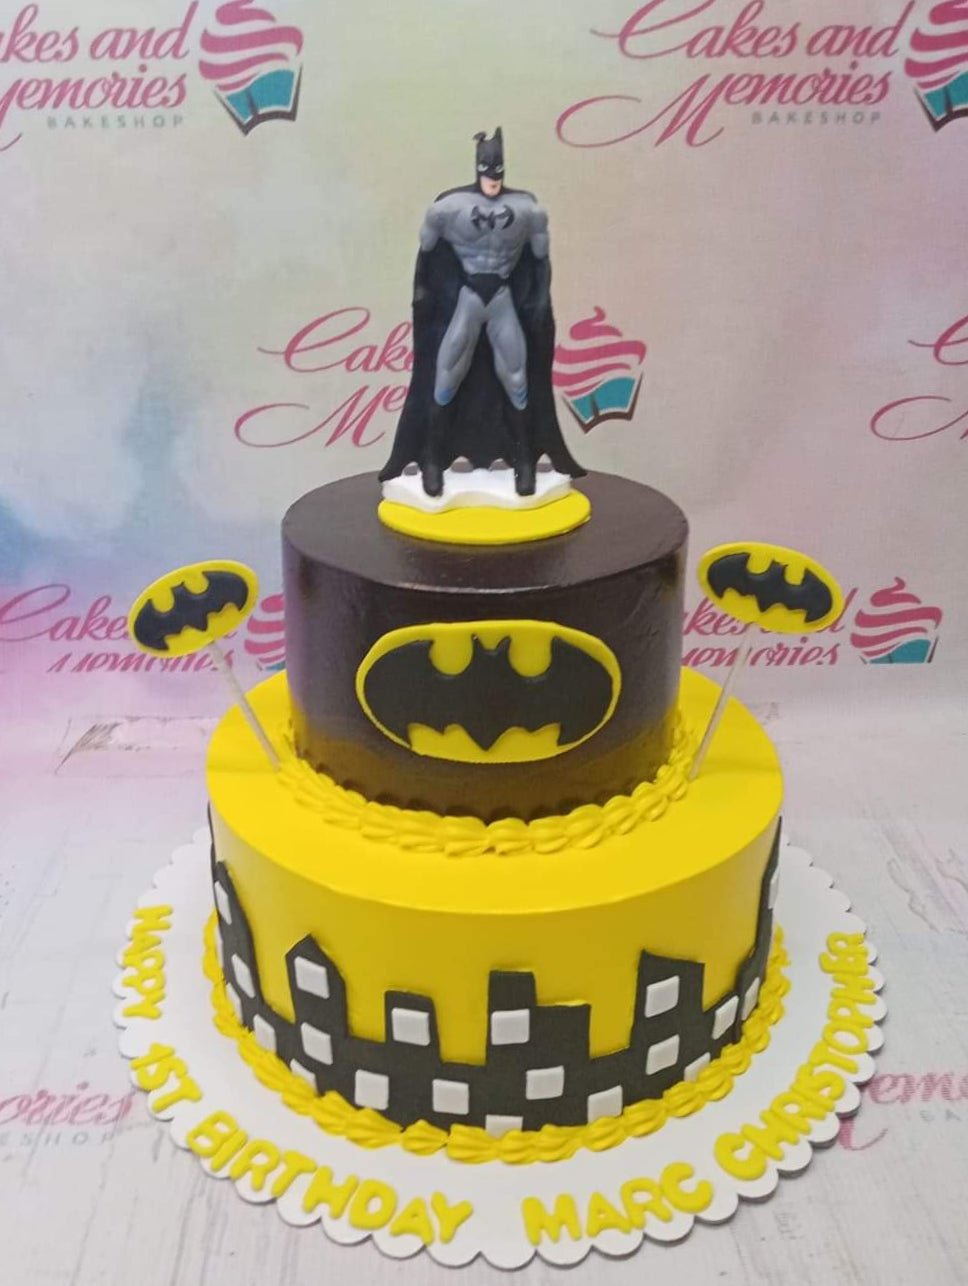 Batman Cake - 2208 – Cakes and Memories Bakeshop